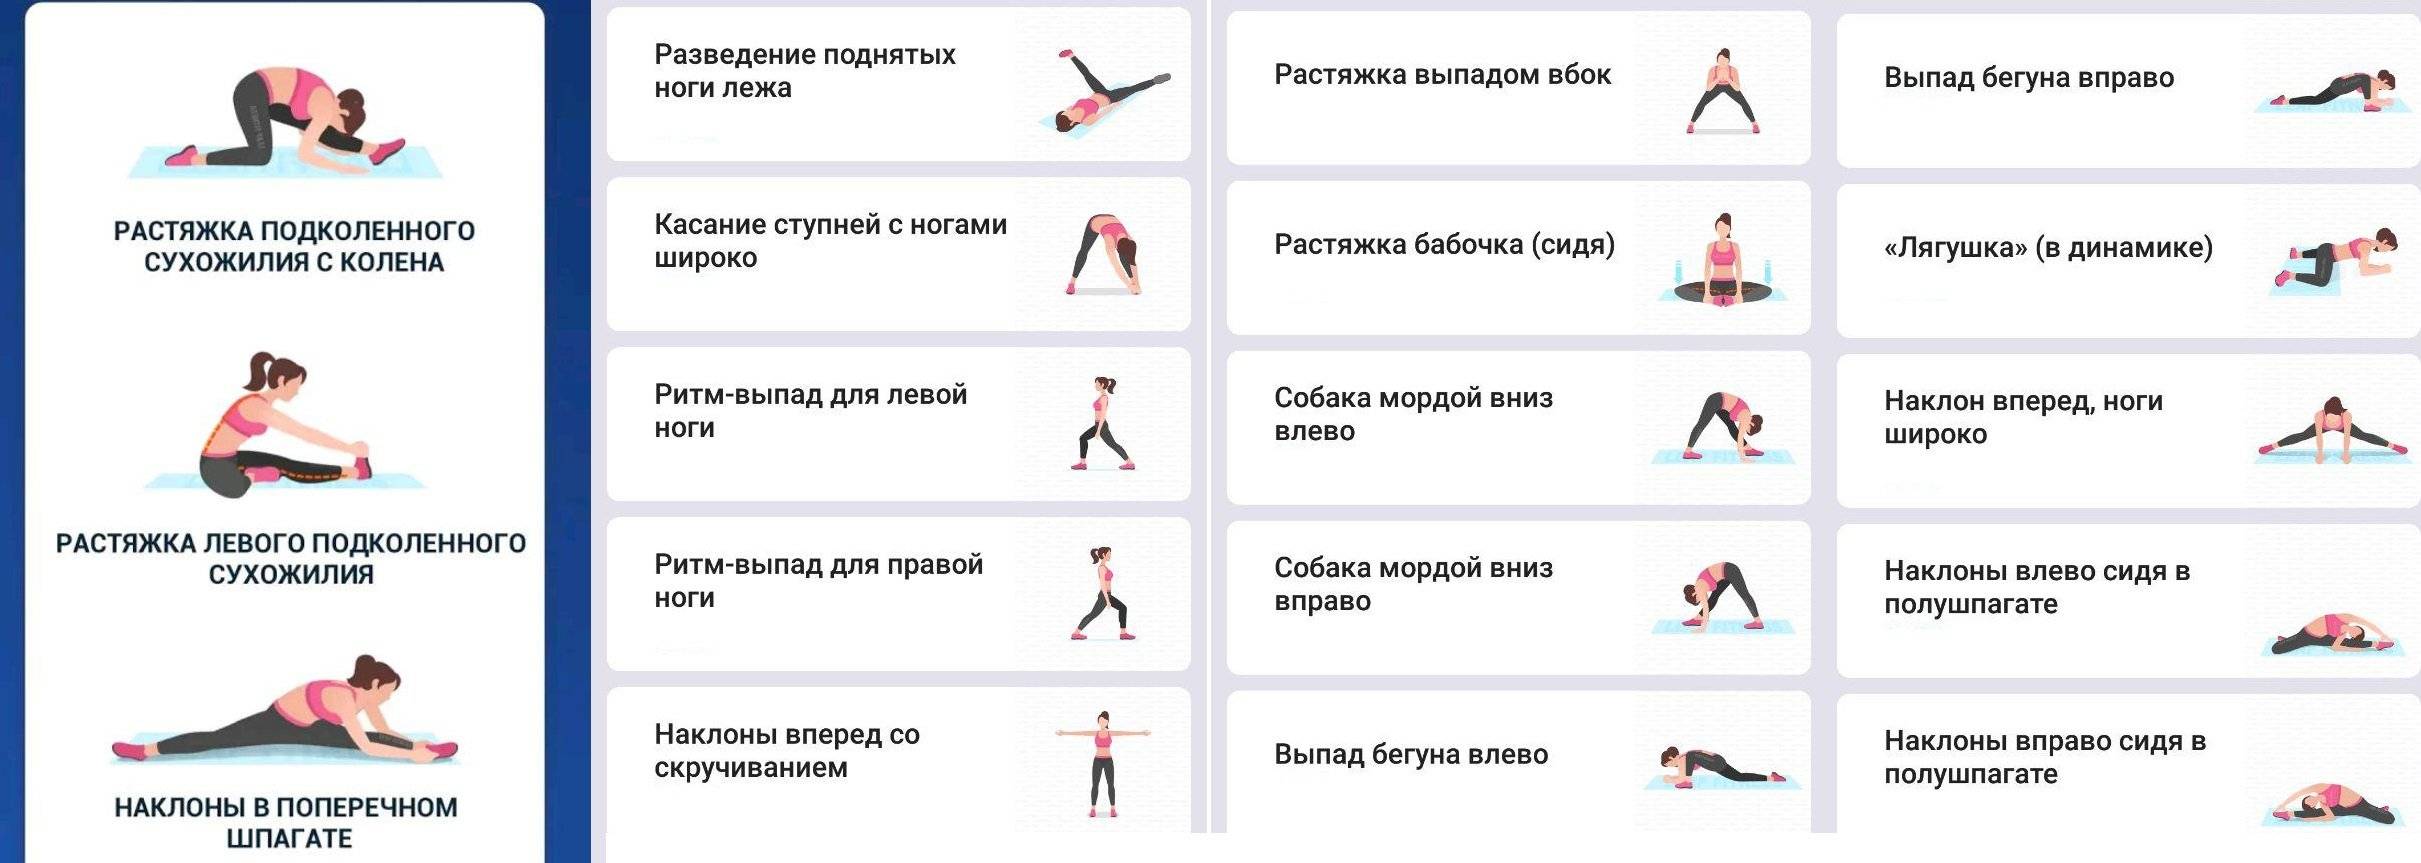 Как сесть на шпагат за неделю: упражнения на растяжку, техники для разных возрастов - tony.ru